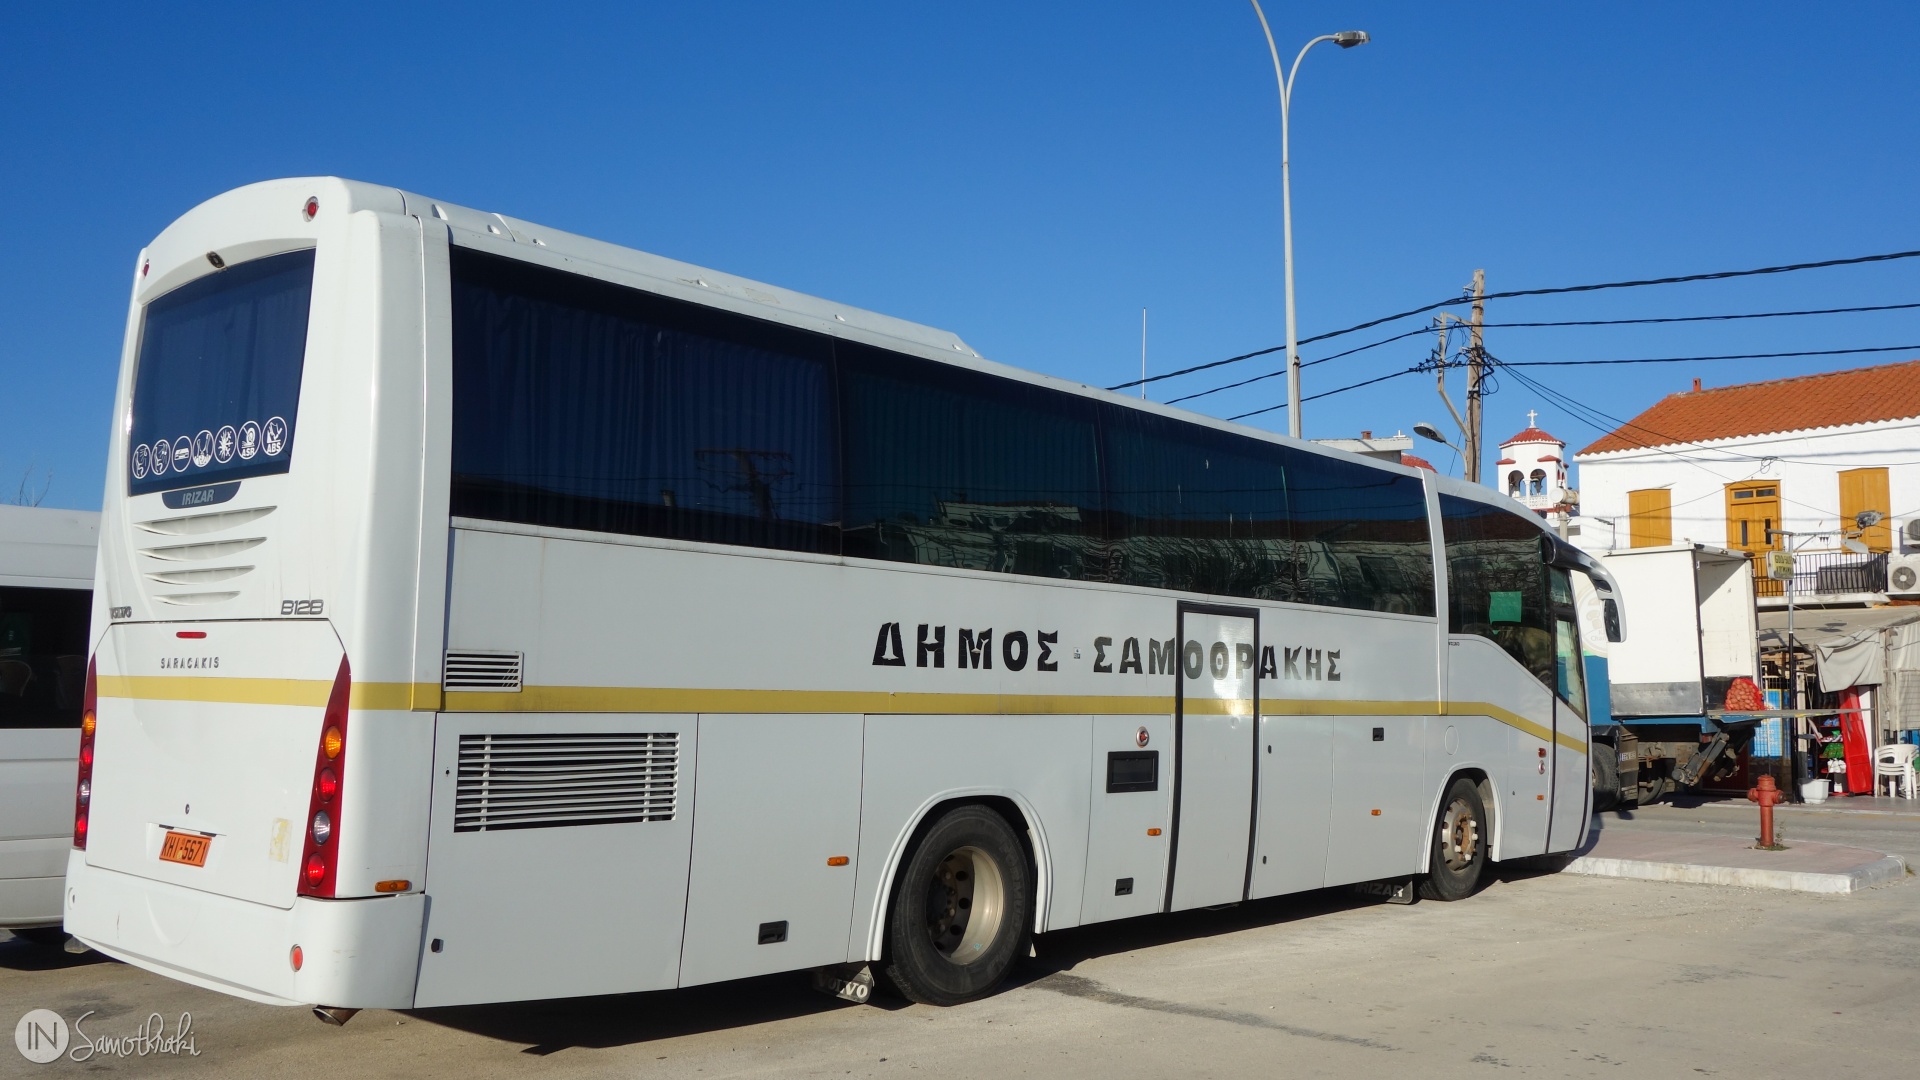 Samothraki bus schedule in 2023